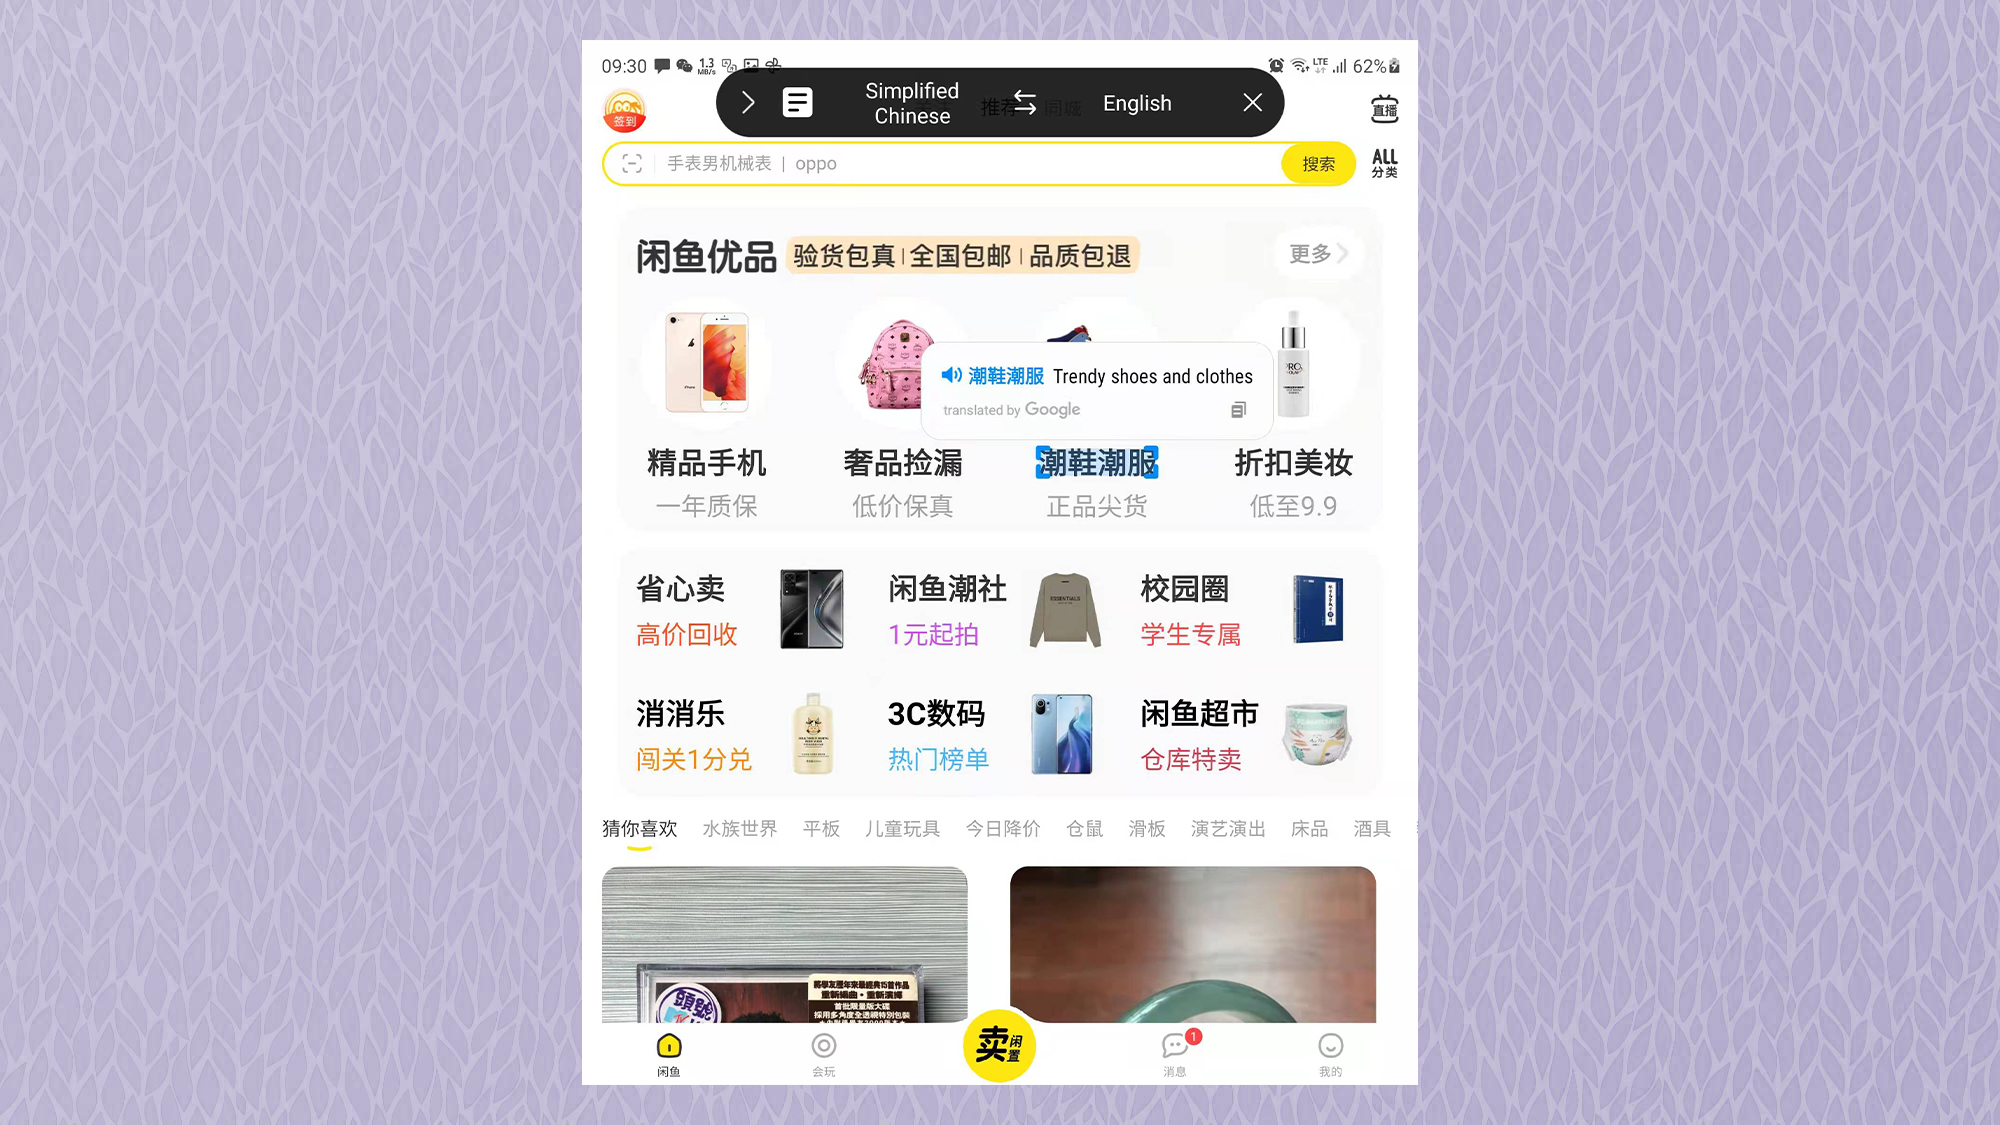 Снимок экрана Samsung Galaxy Z Fold3, на котором показано изображение приложения на китайском языке с переводом предложения на английском языке.